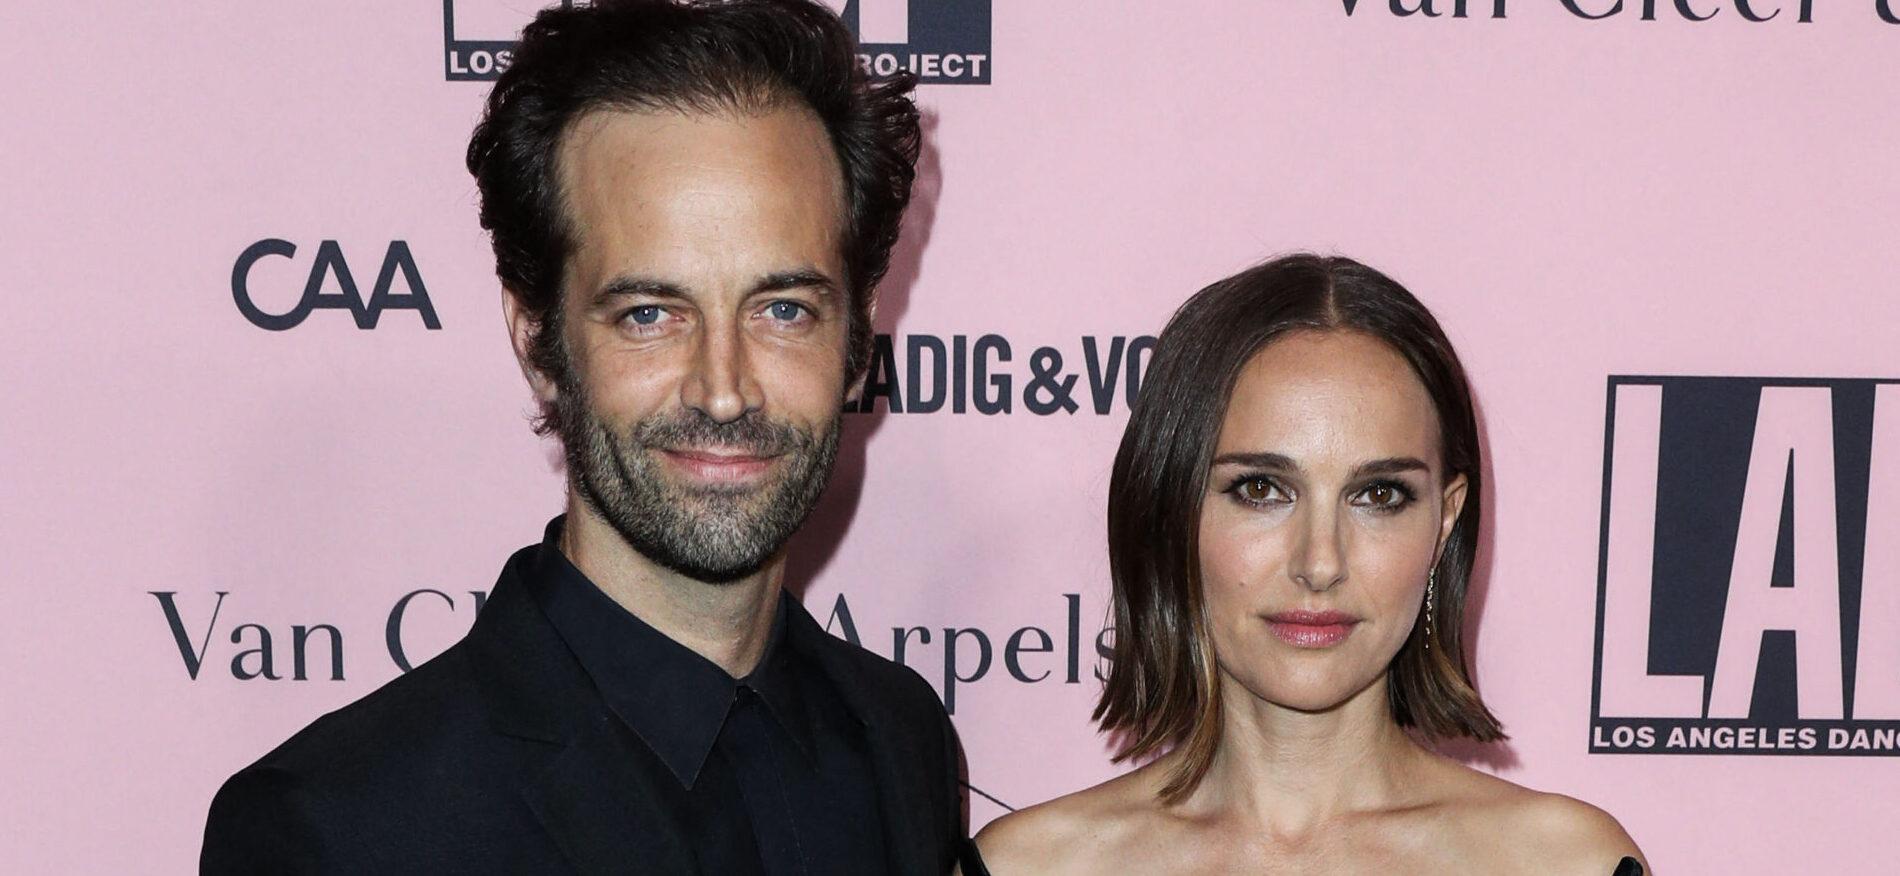 Natalie Portman Finalizes Divorce After Low-Key Separation From Estranged Husband